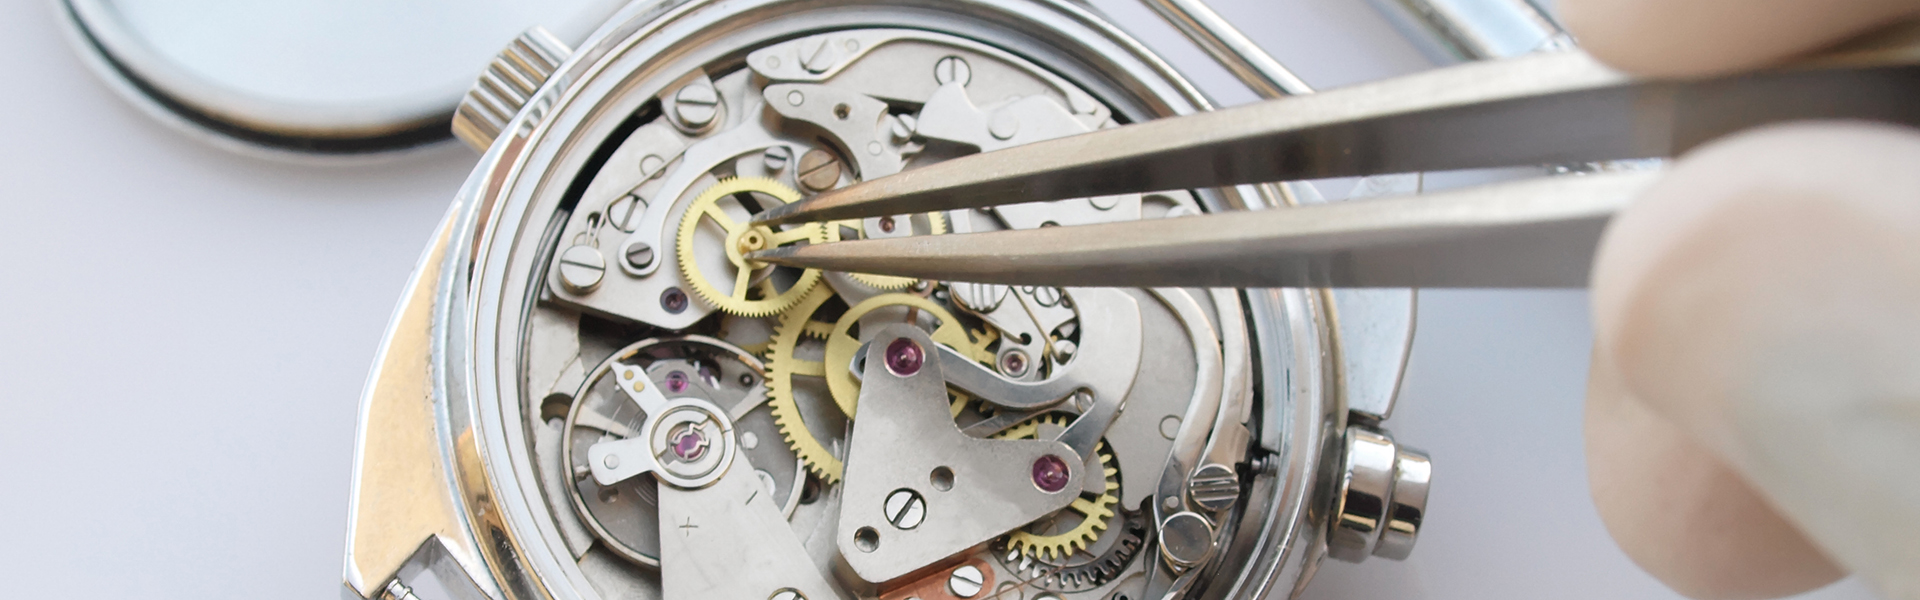 Nahaufnahme des Innenlebens einer mechanischen Armbanduhr mit Uhrwerk